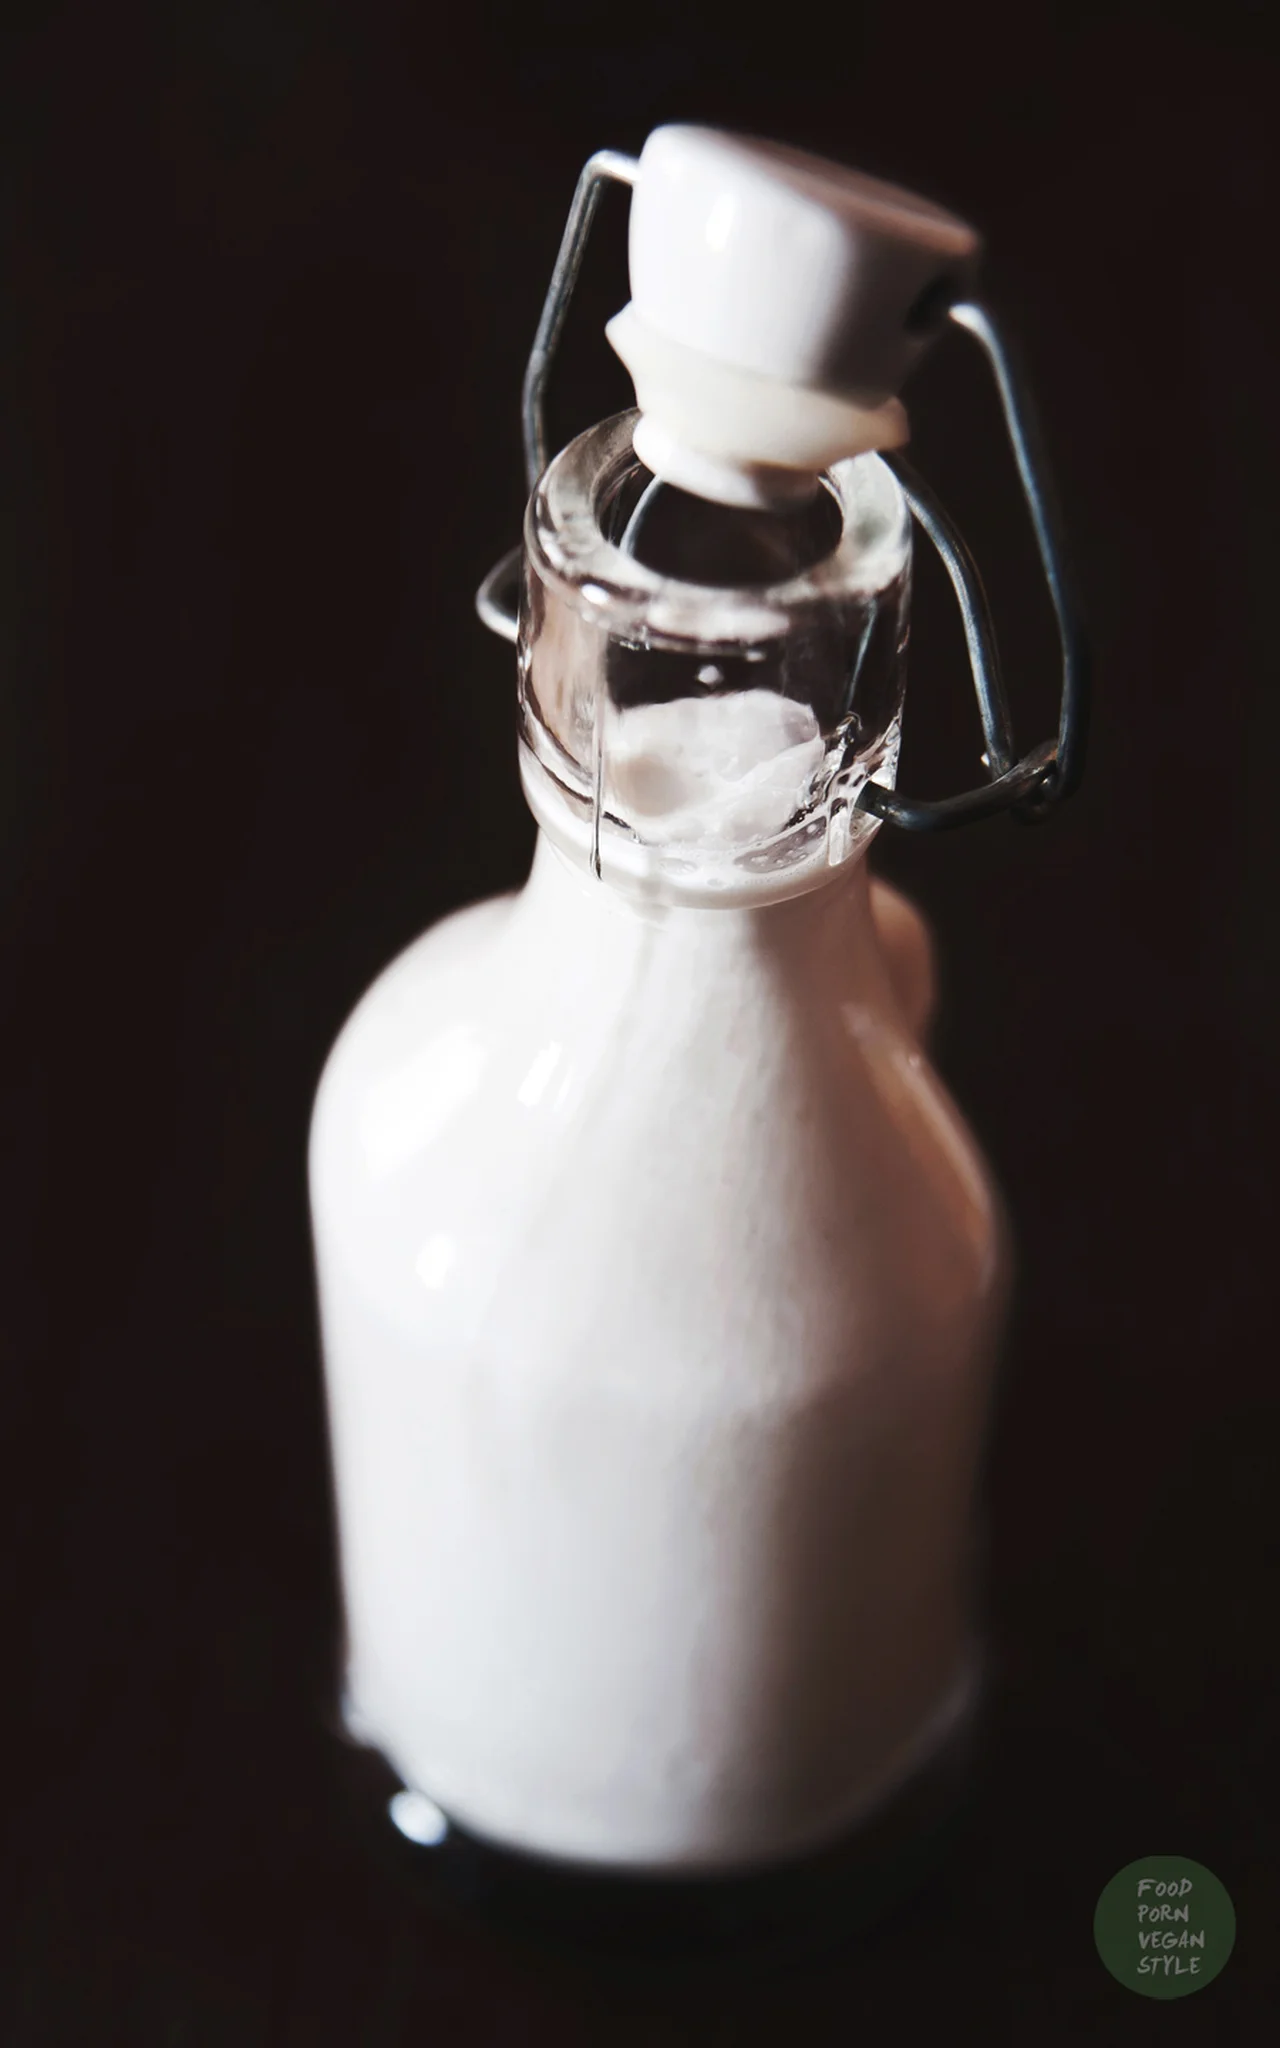 Domowe mleko sezamowe